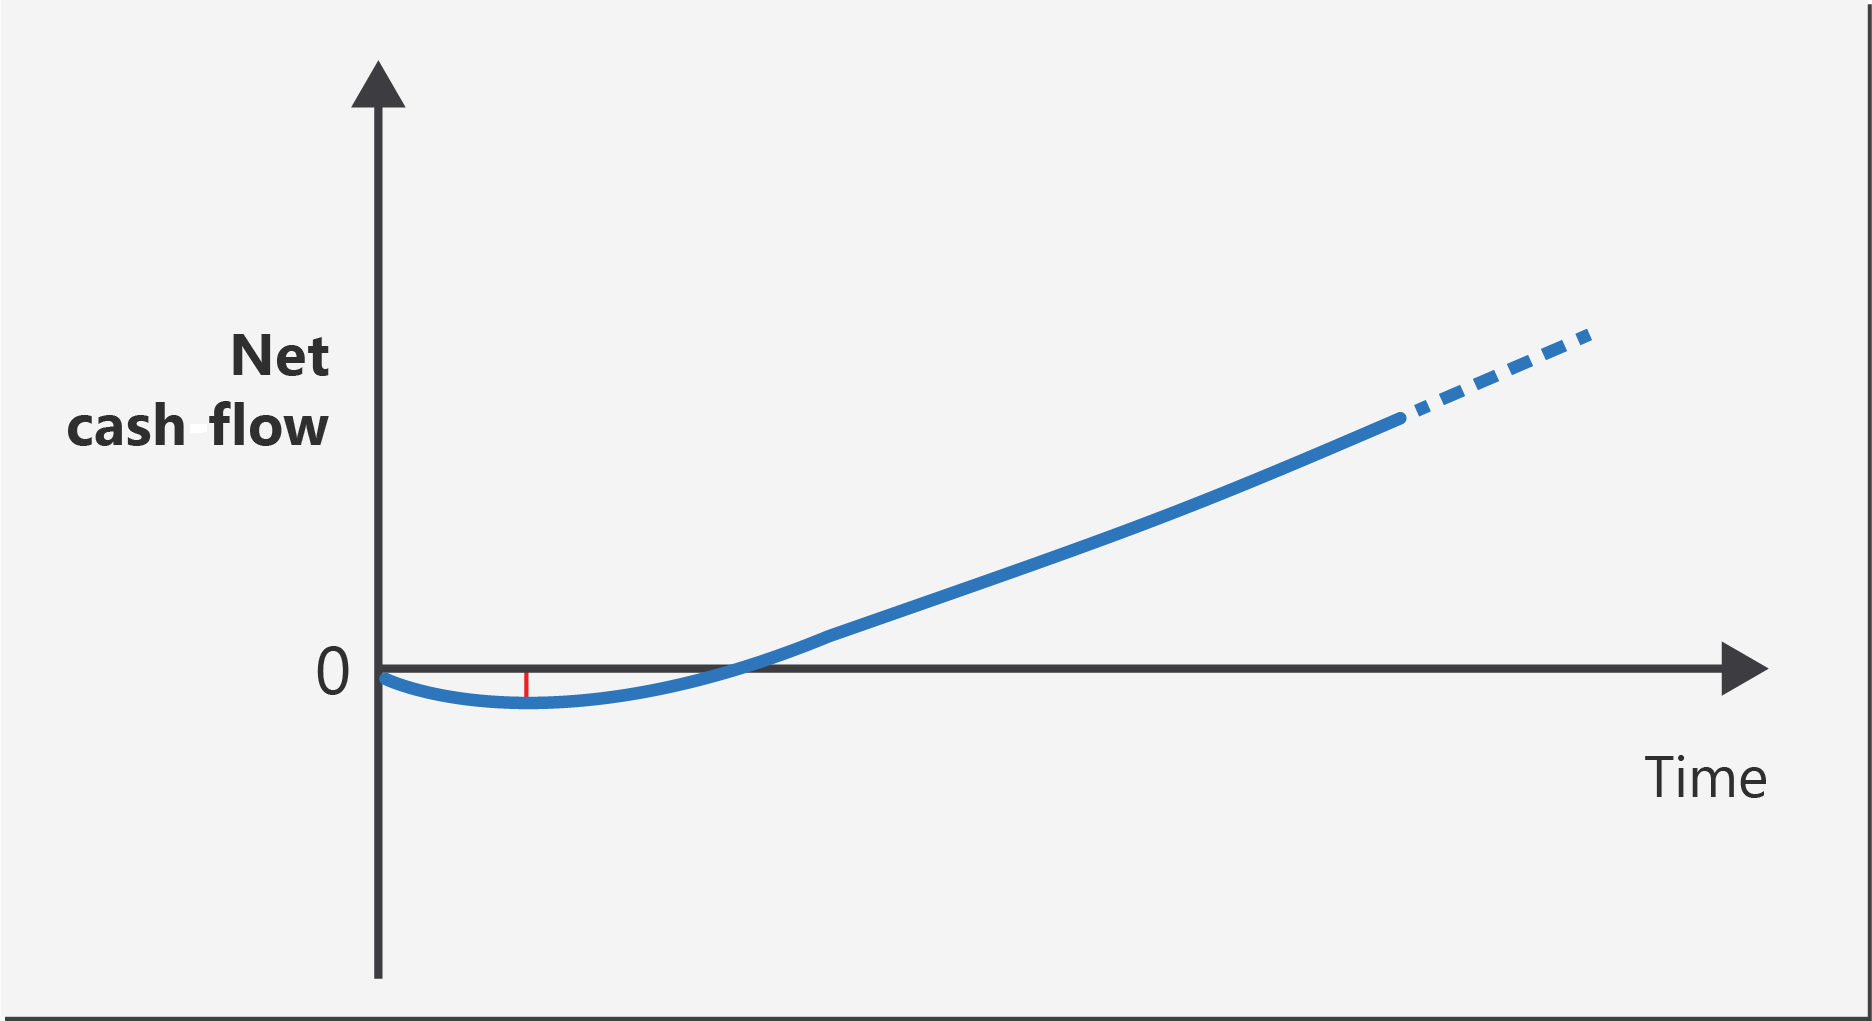 顯示一段時間內的淨現金流量的折線圖。該值從零開始並短暫降至零以下。然後其變為正值並穩定提升。